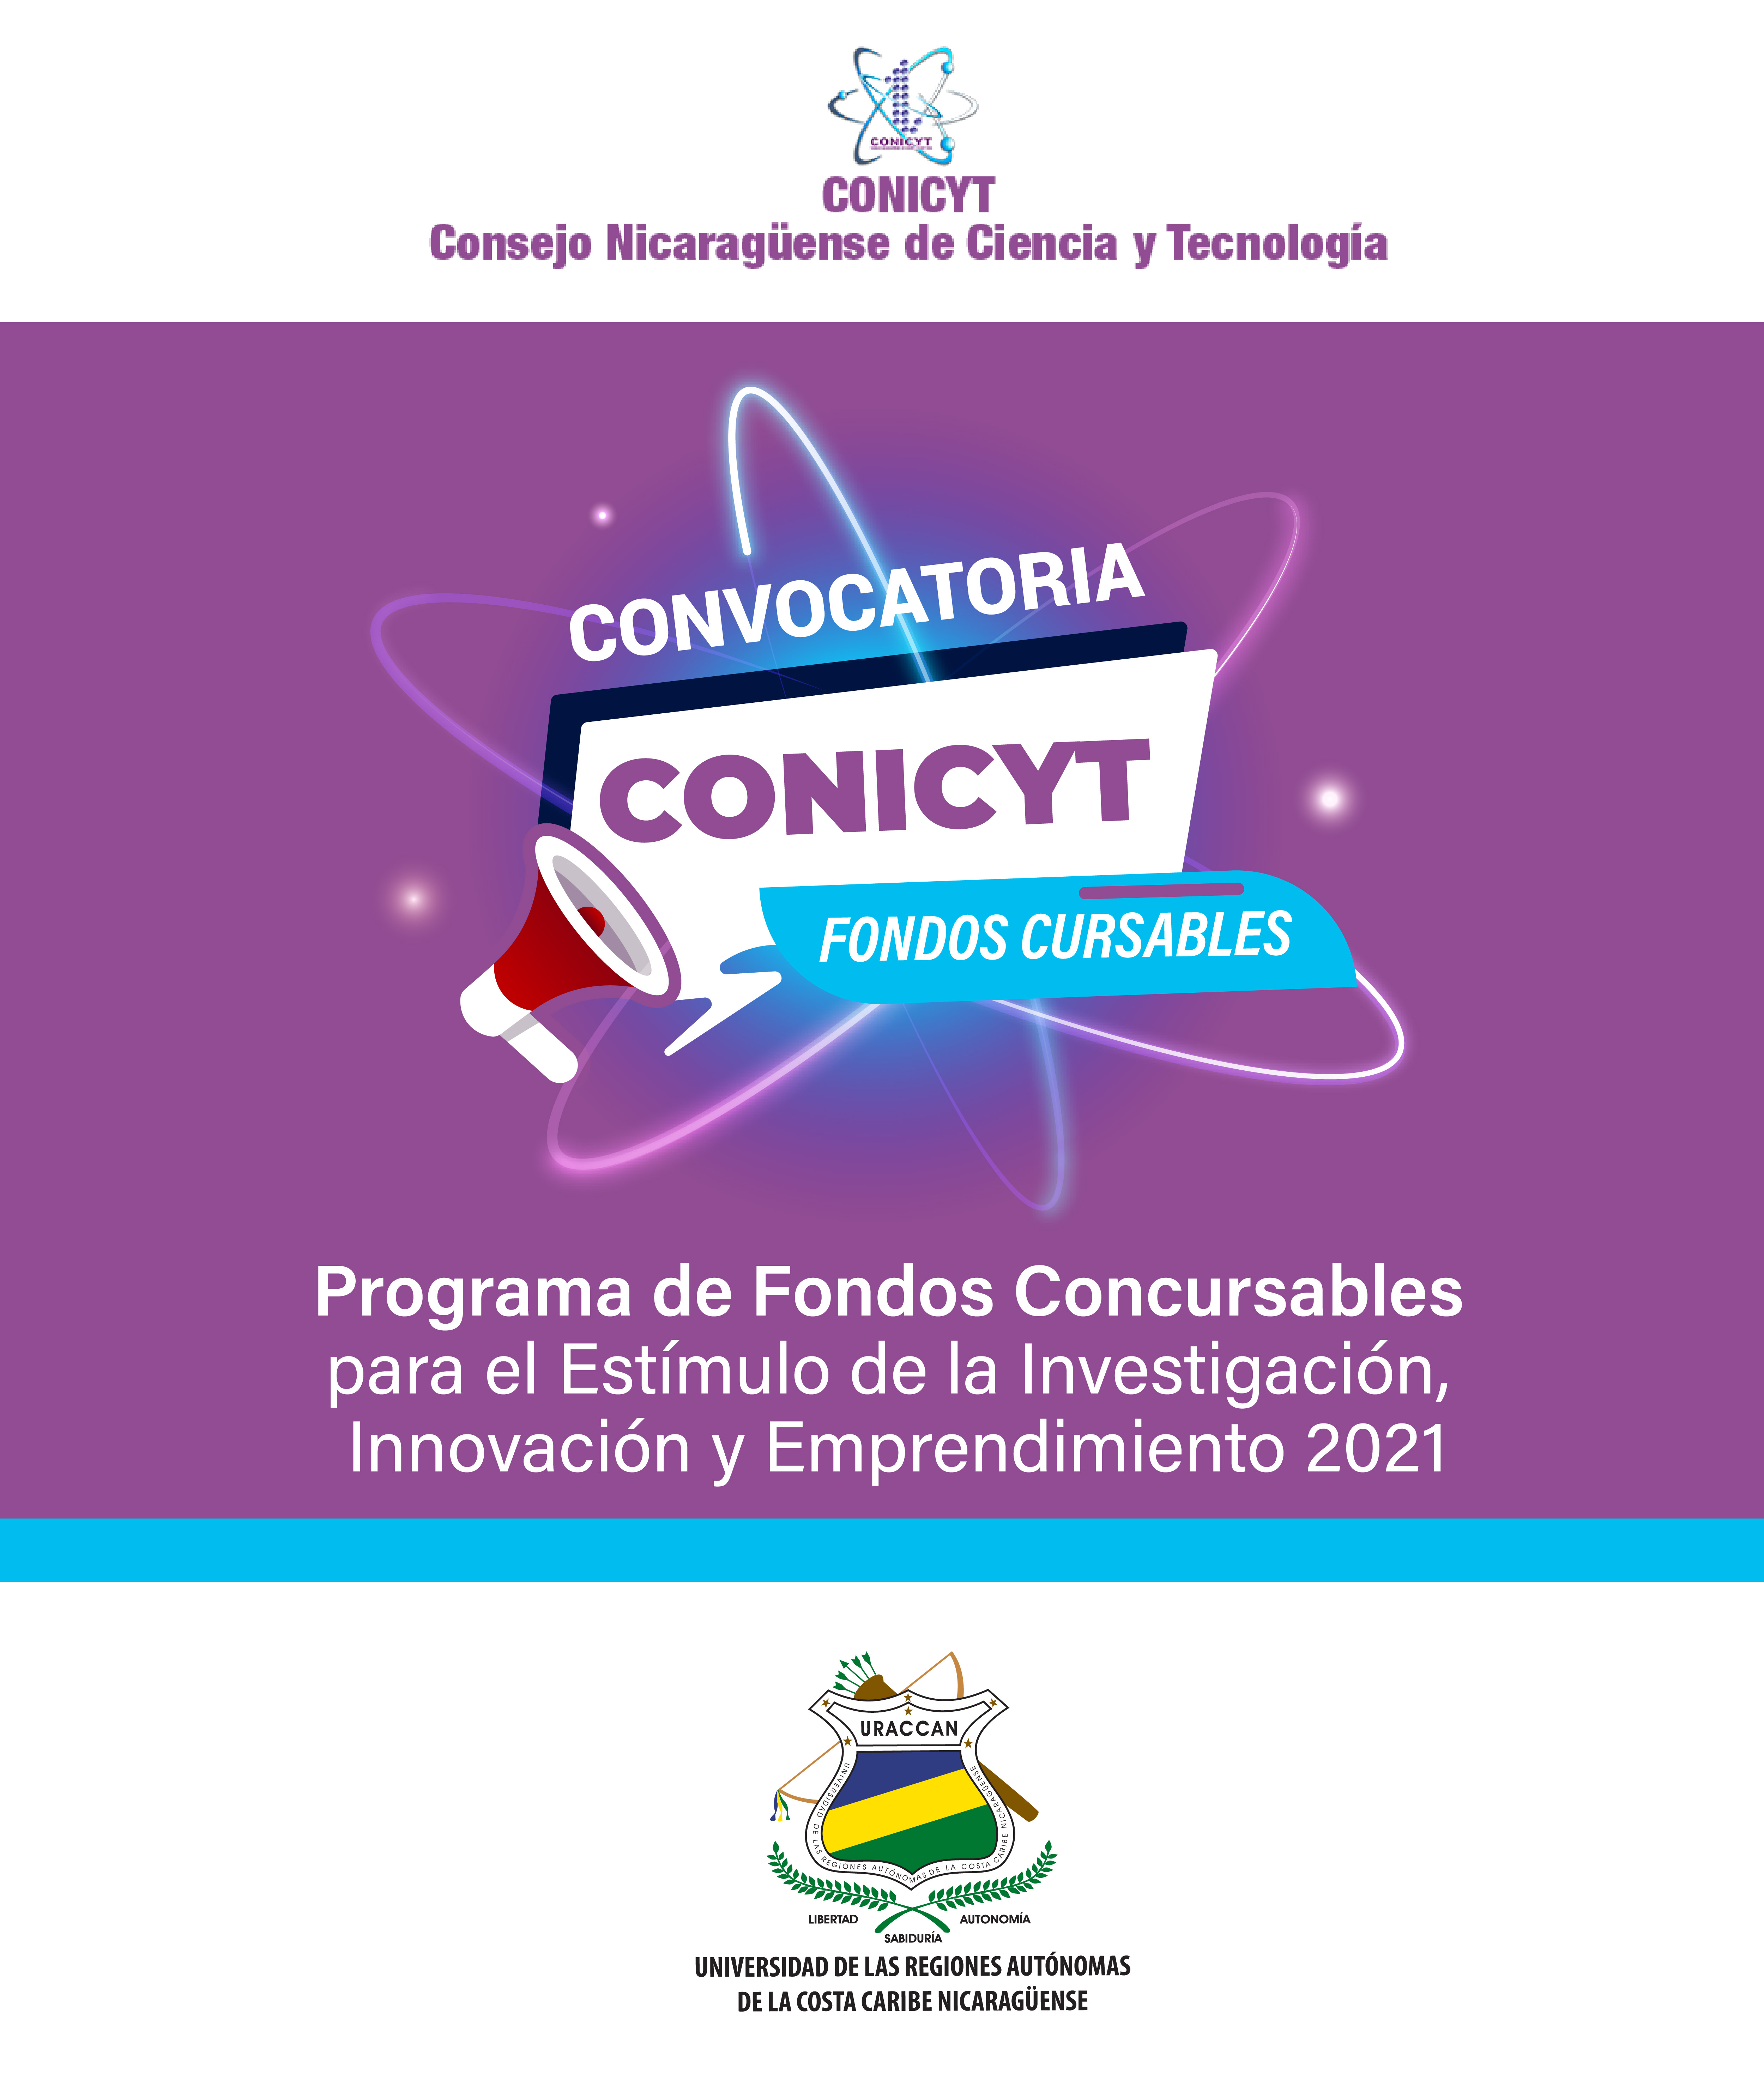 Programa de Fondos Concursables para el Estimulo de la Investigación, Innovación y Emprendimiento 2021